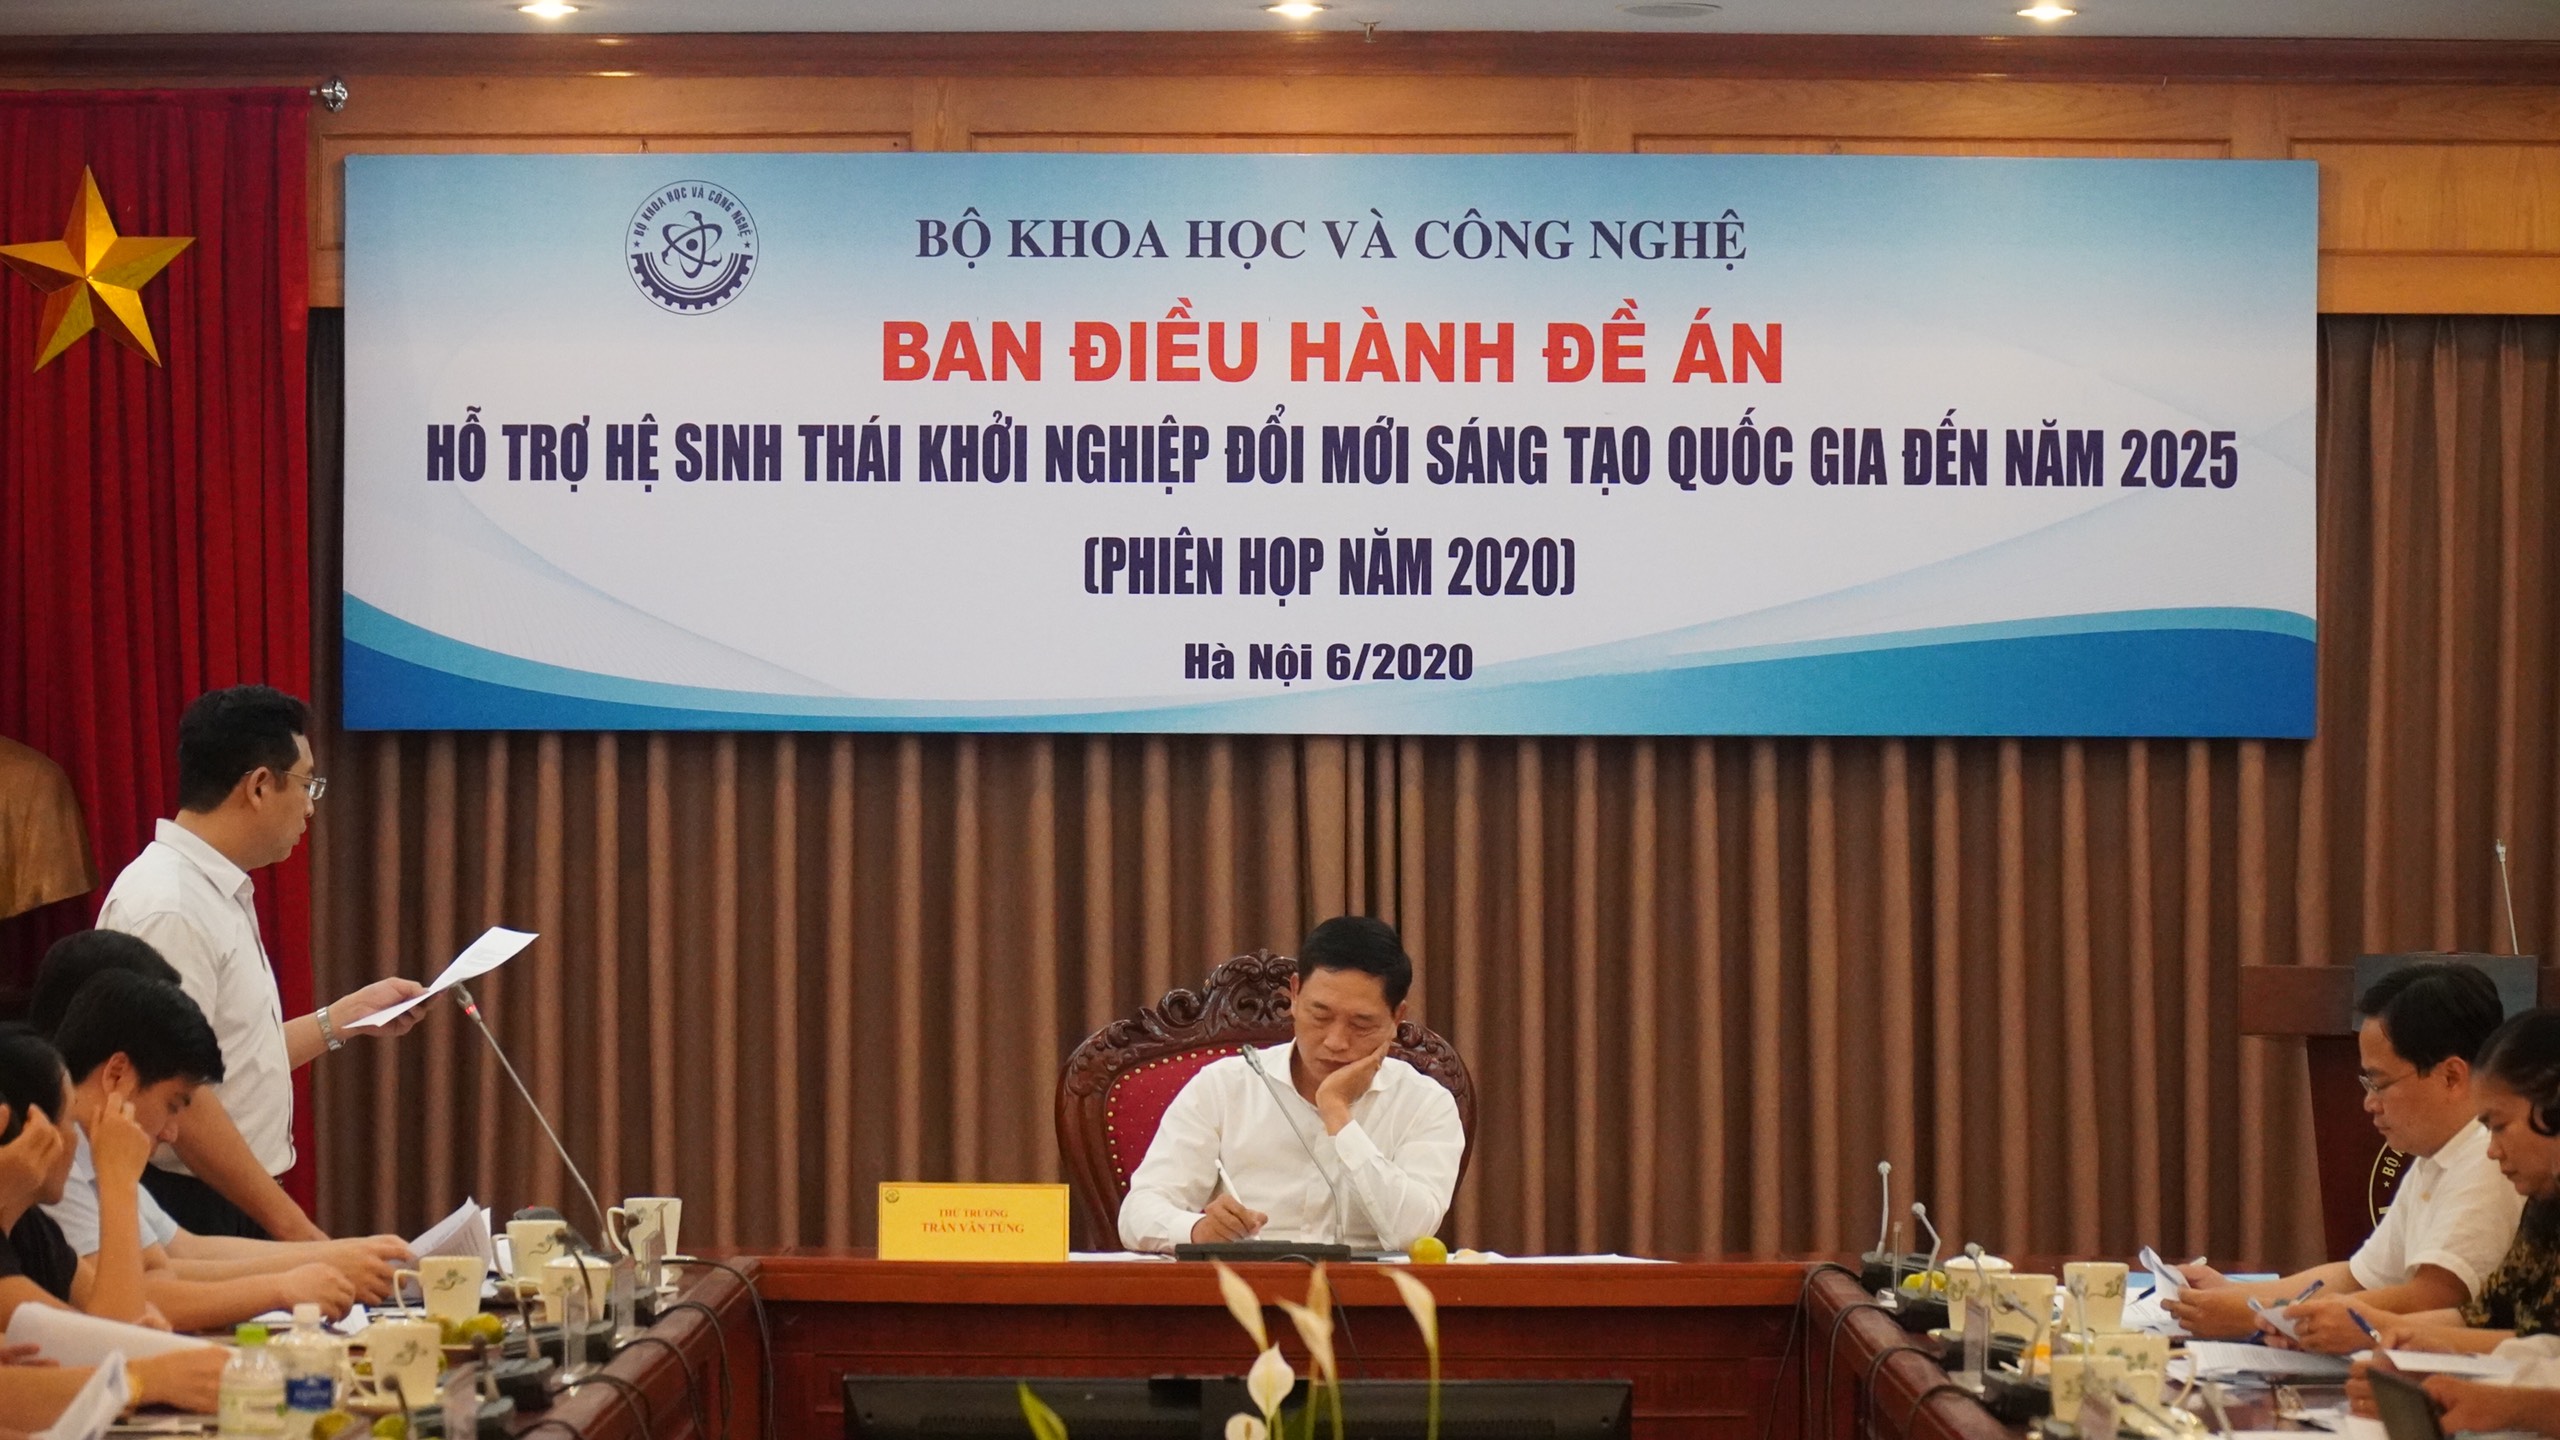 Anh Phạm Nam báo cáo kết quả hoạt động 2019 và phương hướng 2020. Ảnh: MinH Công 